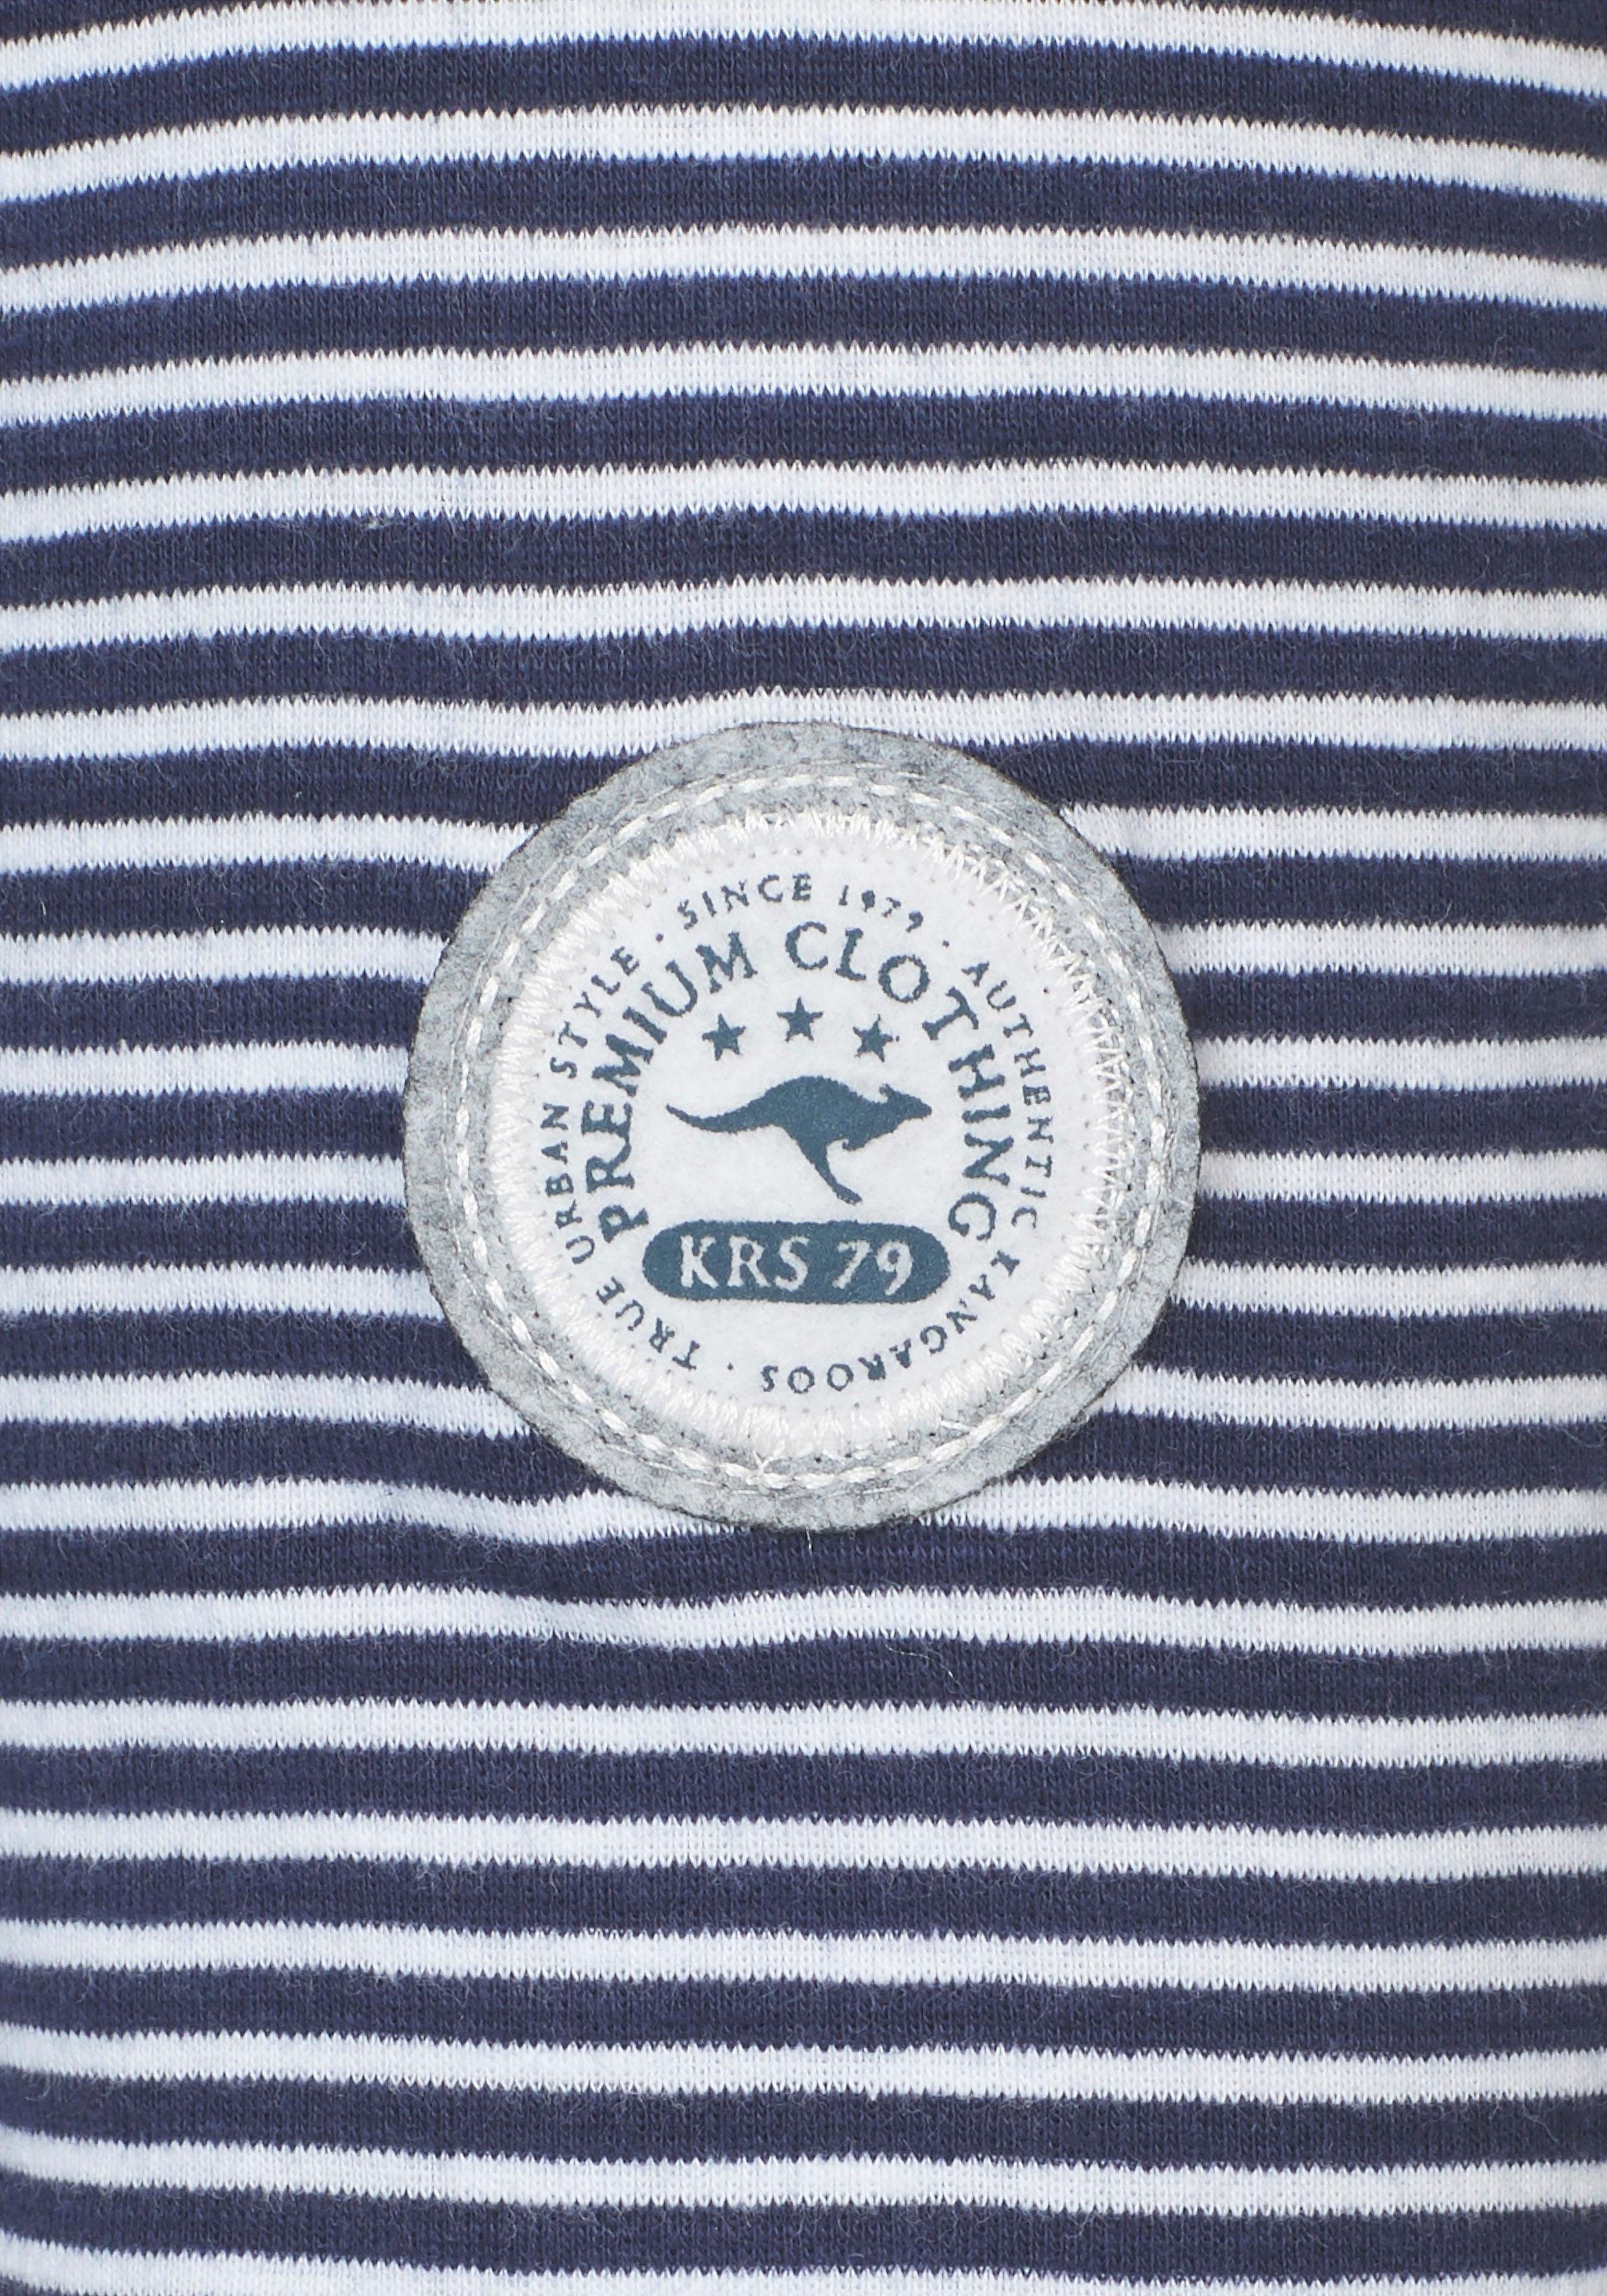 Kordel im passender marine-weiß-gestreift schönen KangaROOS Kapuzenshirt mit Streifen-Mix